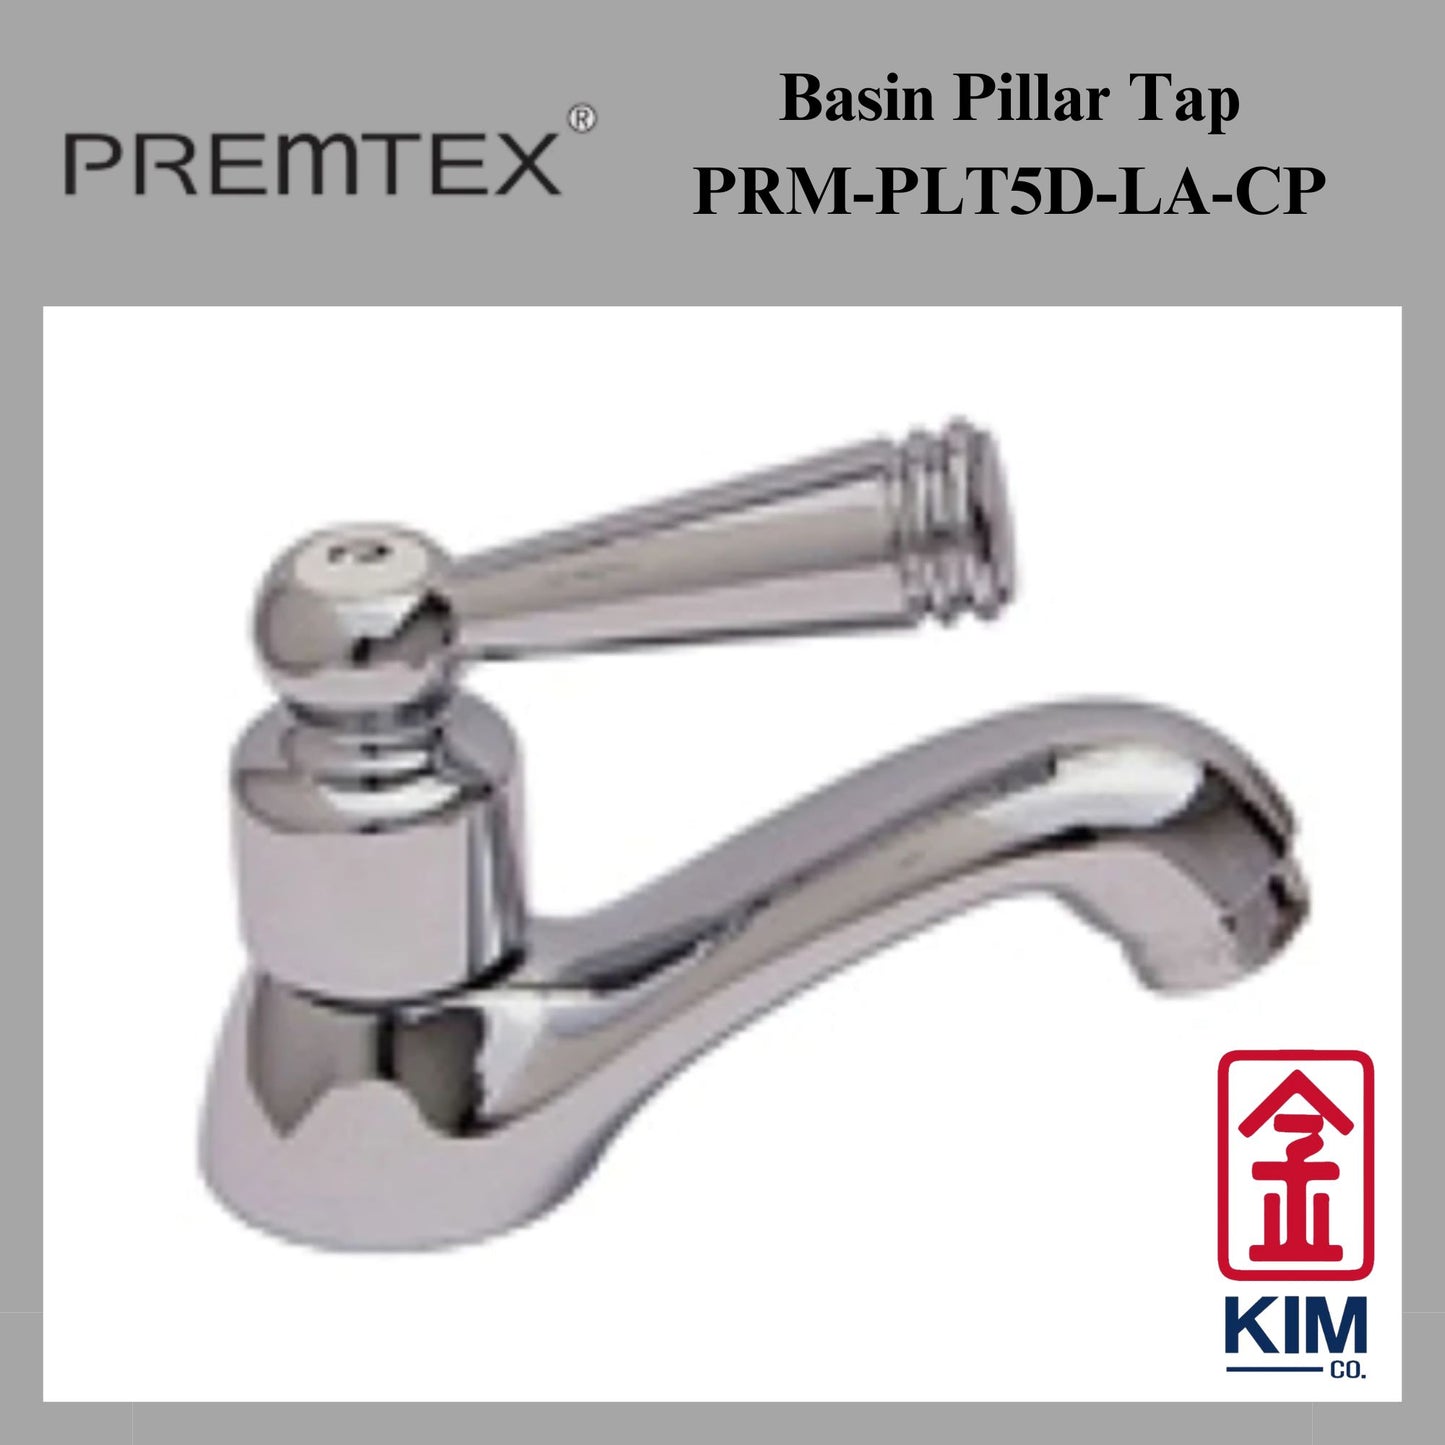 Premtex Basin Pillar Tap (PRM-PLT5D-LA-CP)